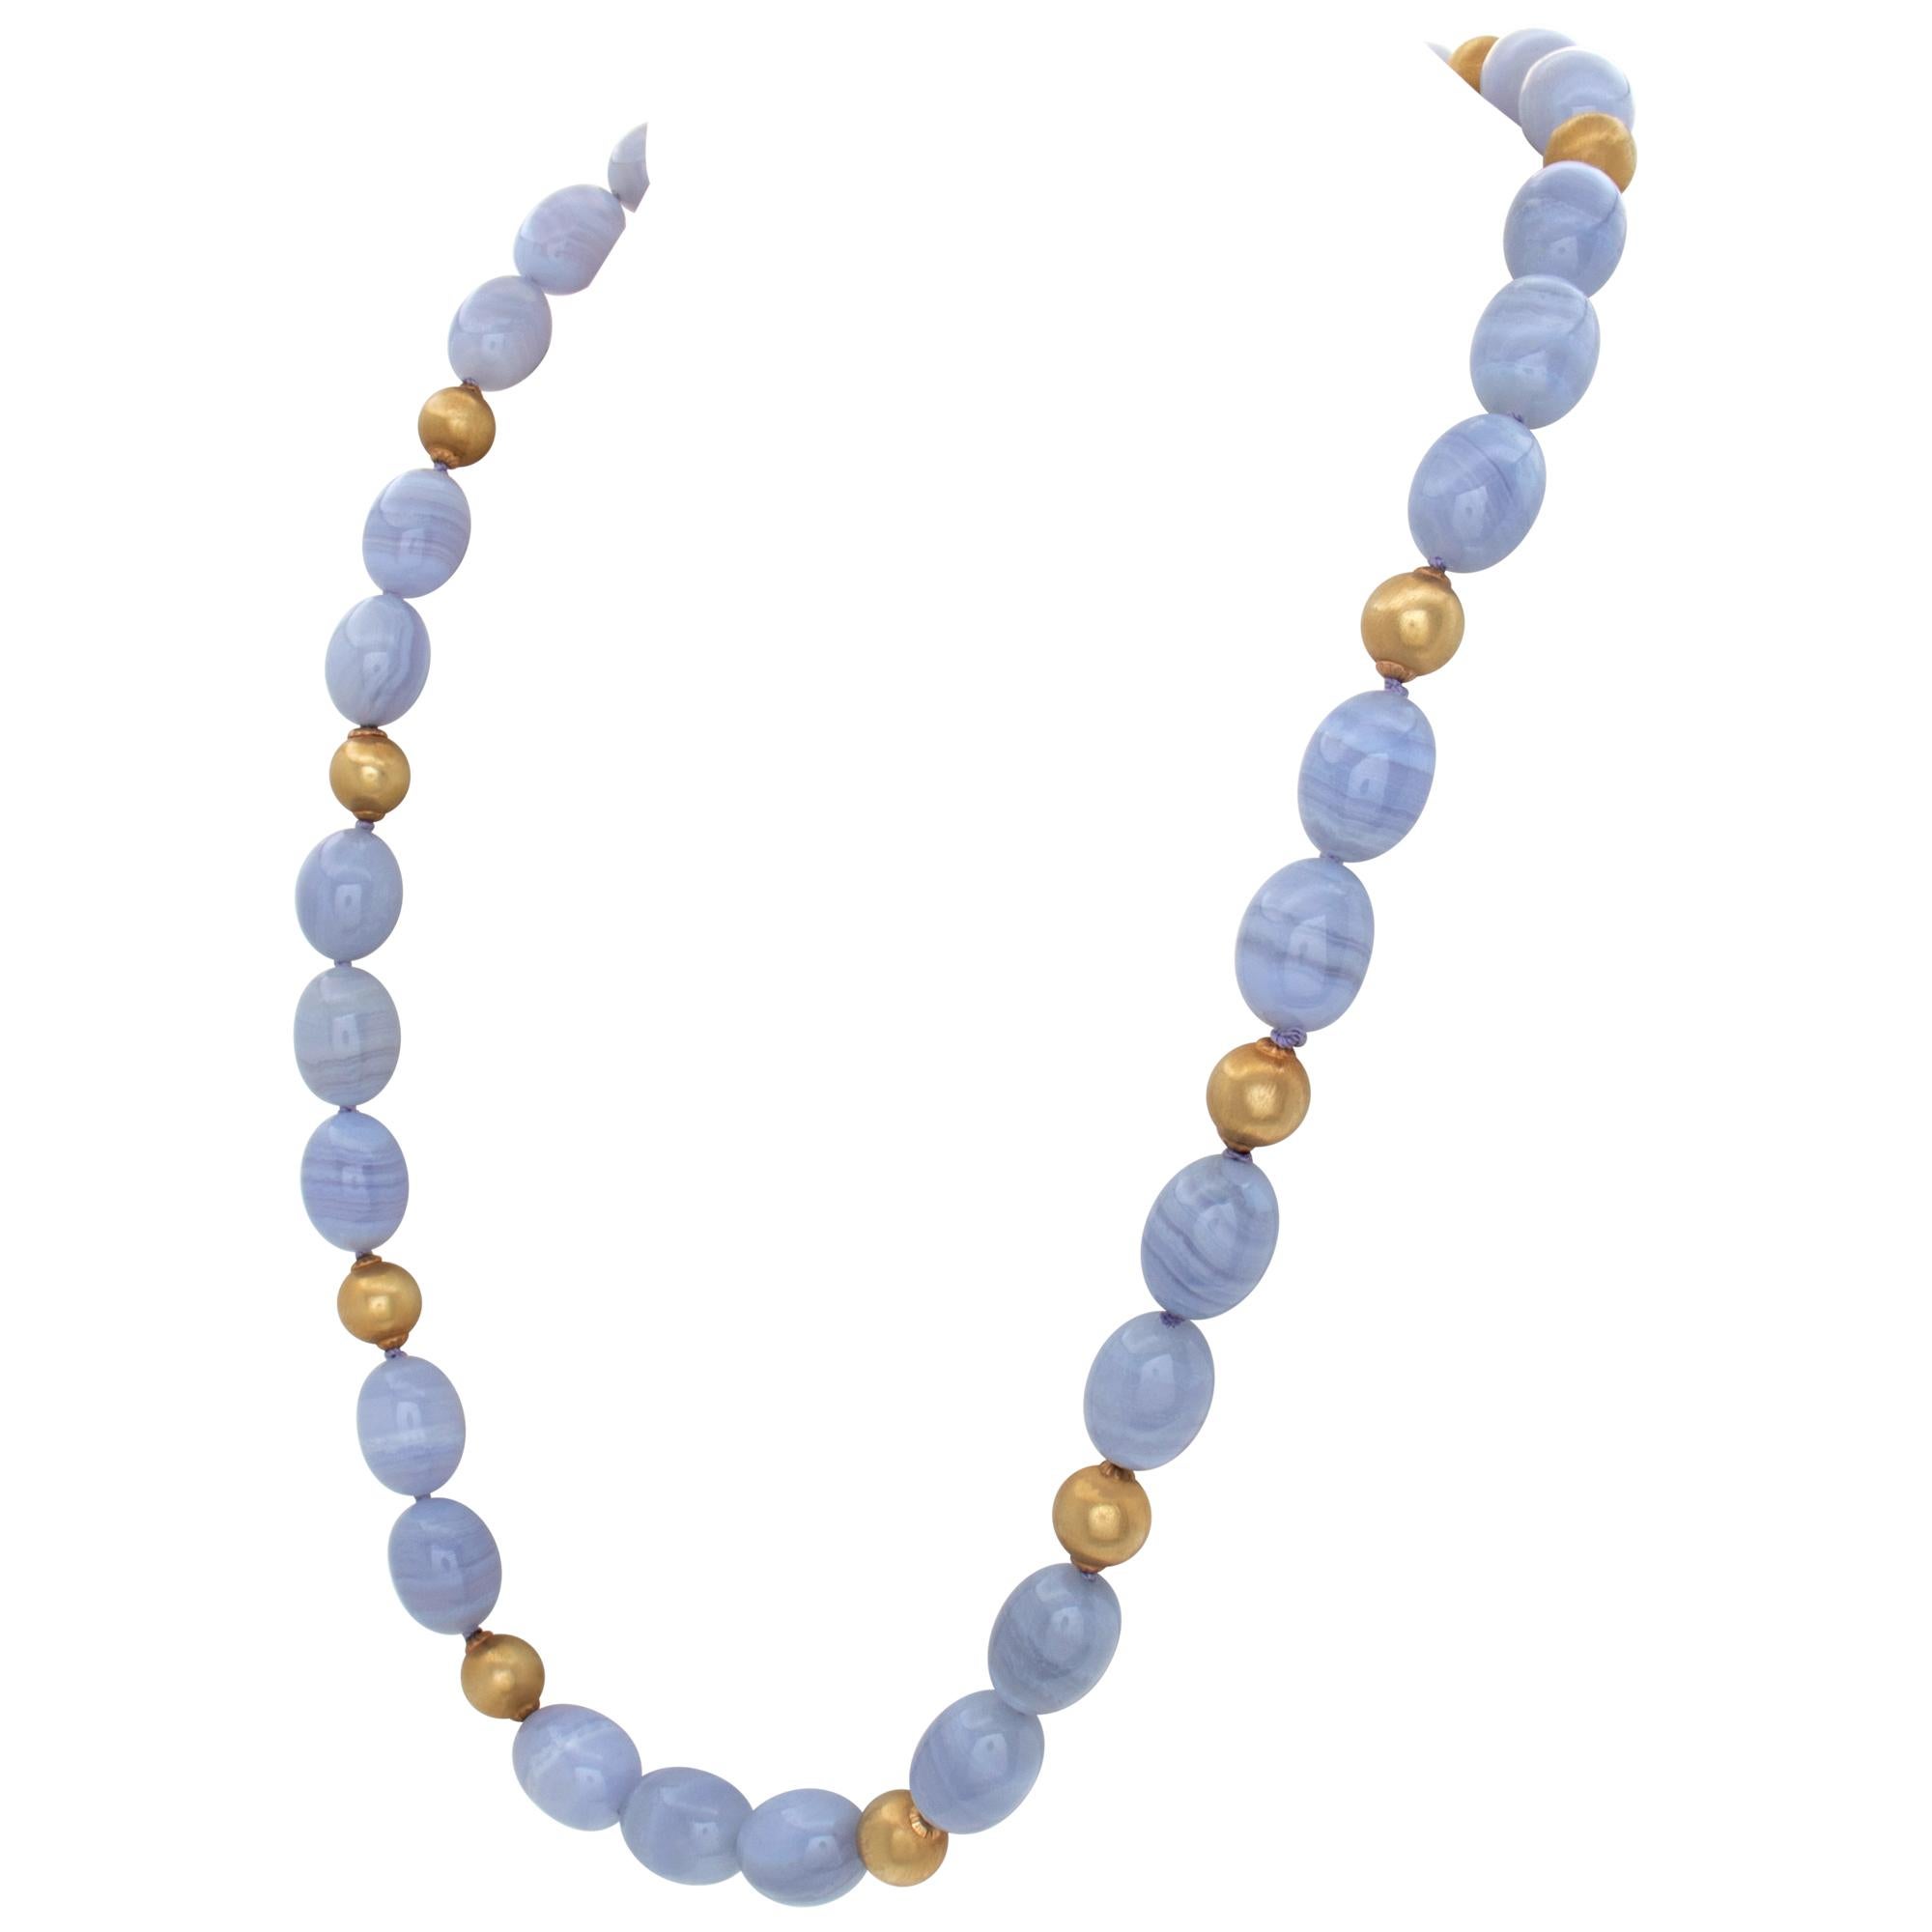 Collier de perles ovales en calcédoine bleu dentelle avec 12 perles en or 18k. Longueur 24 cm.